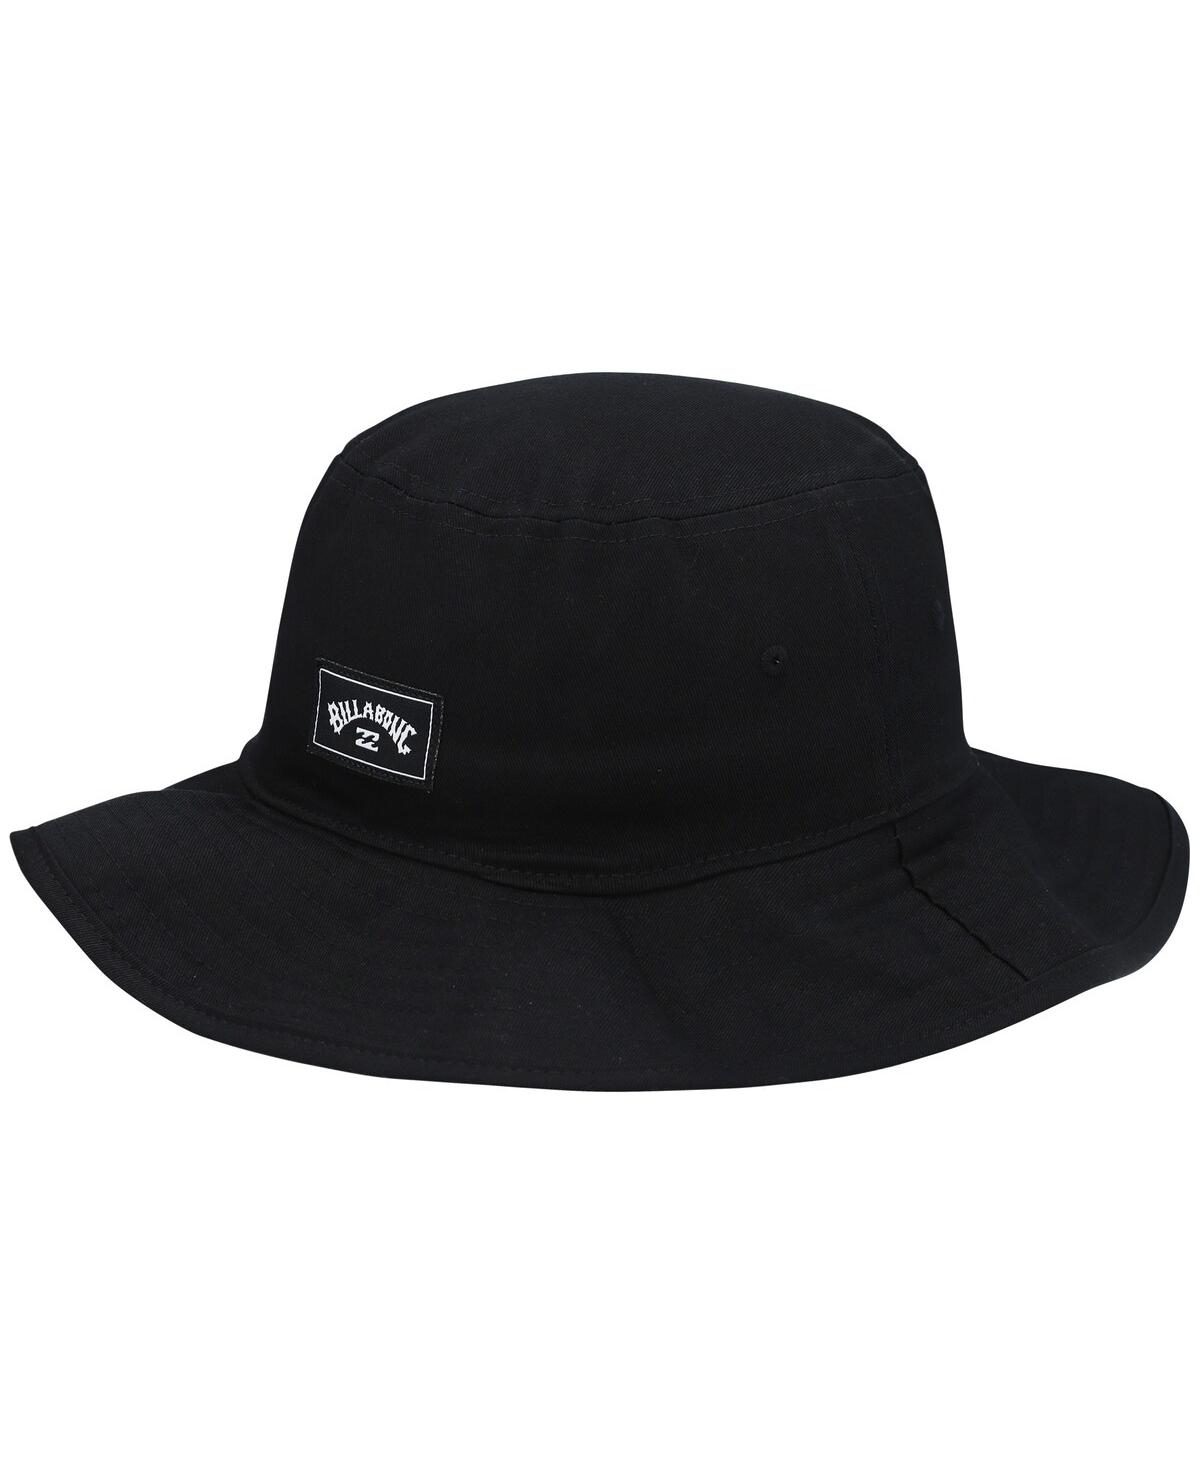 Men's Black Big John Bucket Hat - Chino